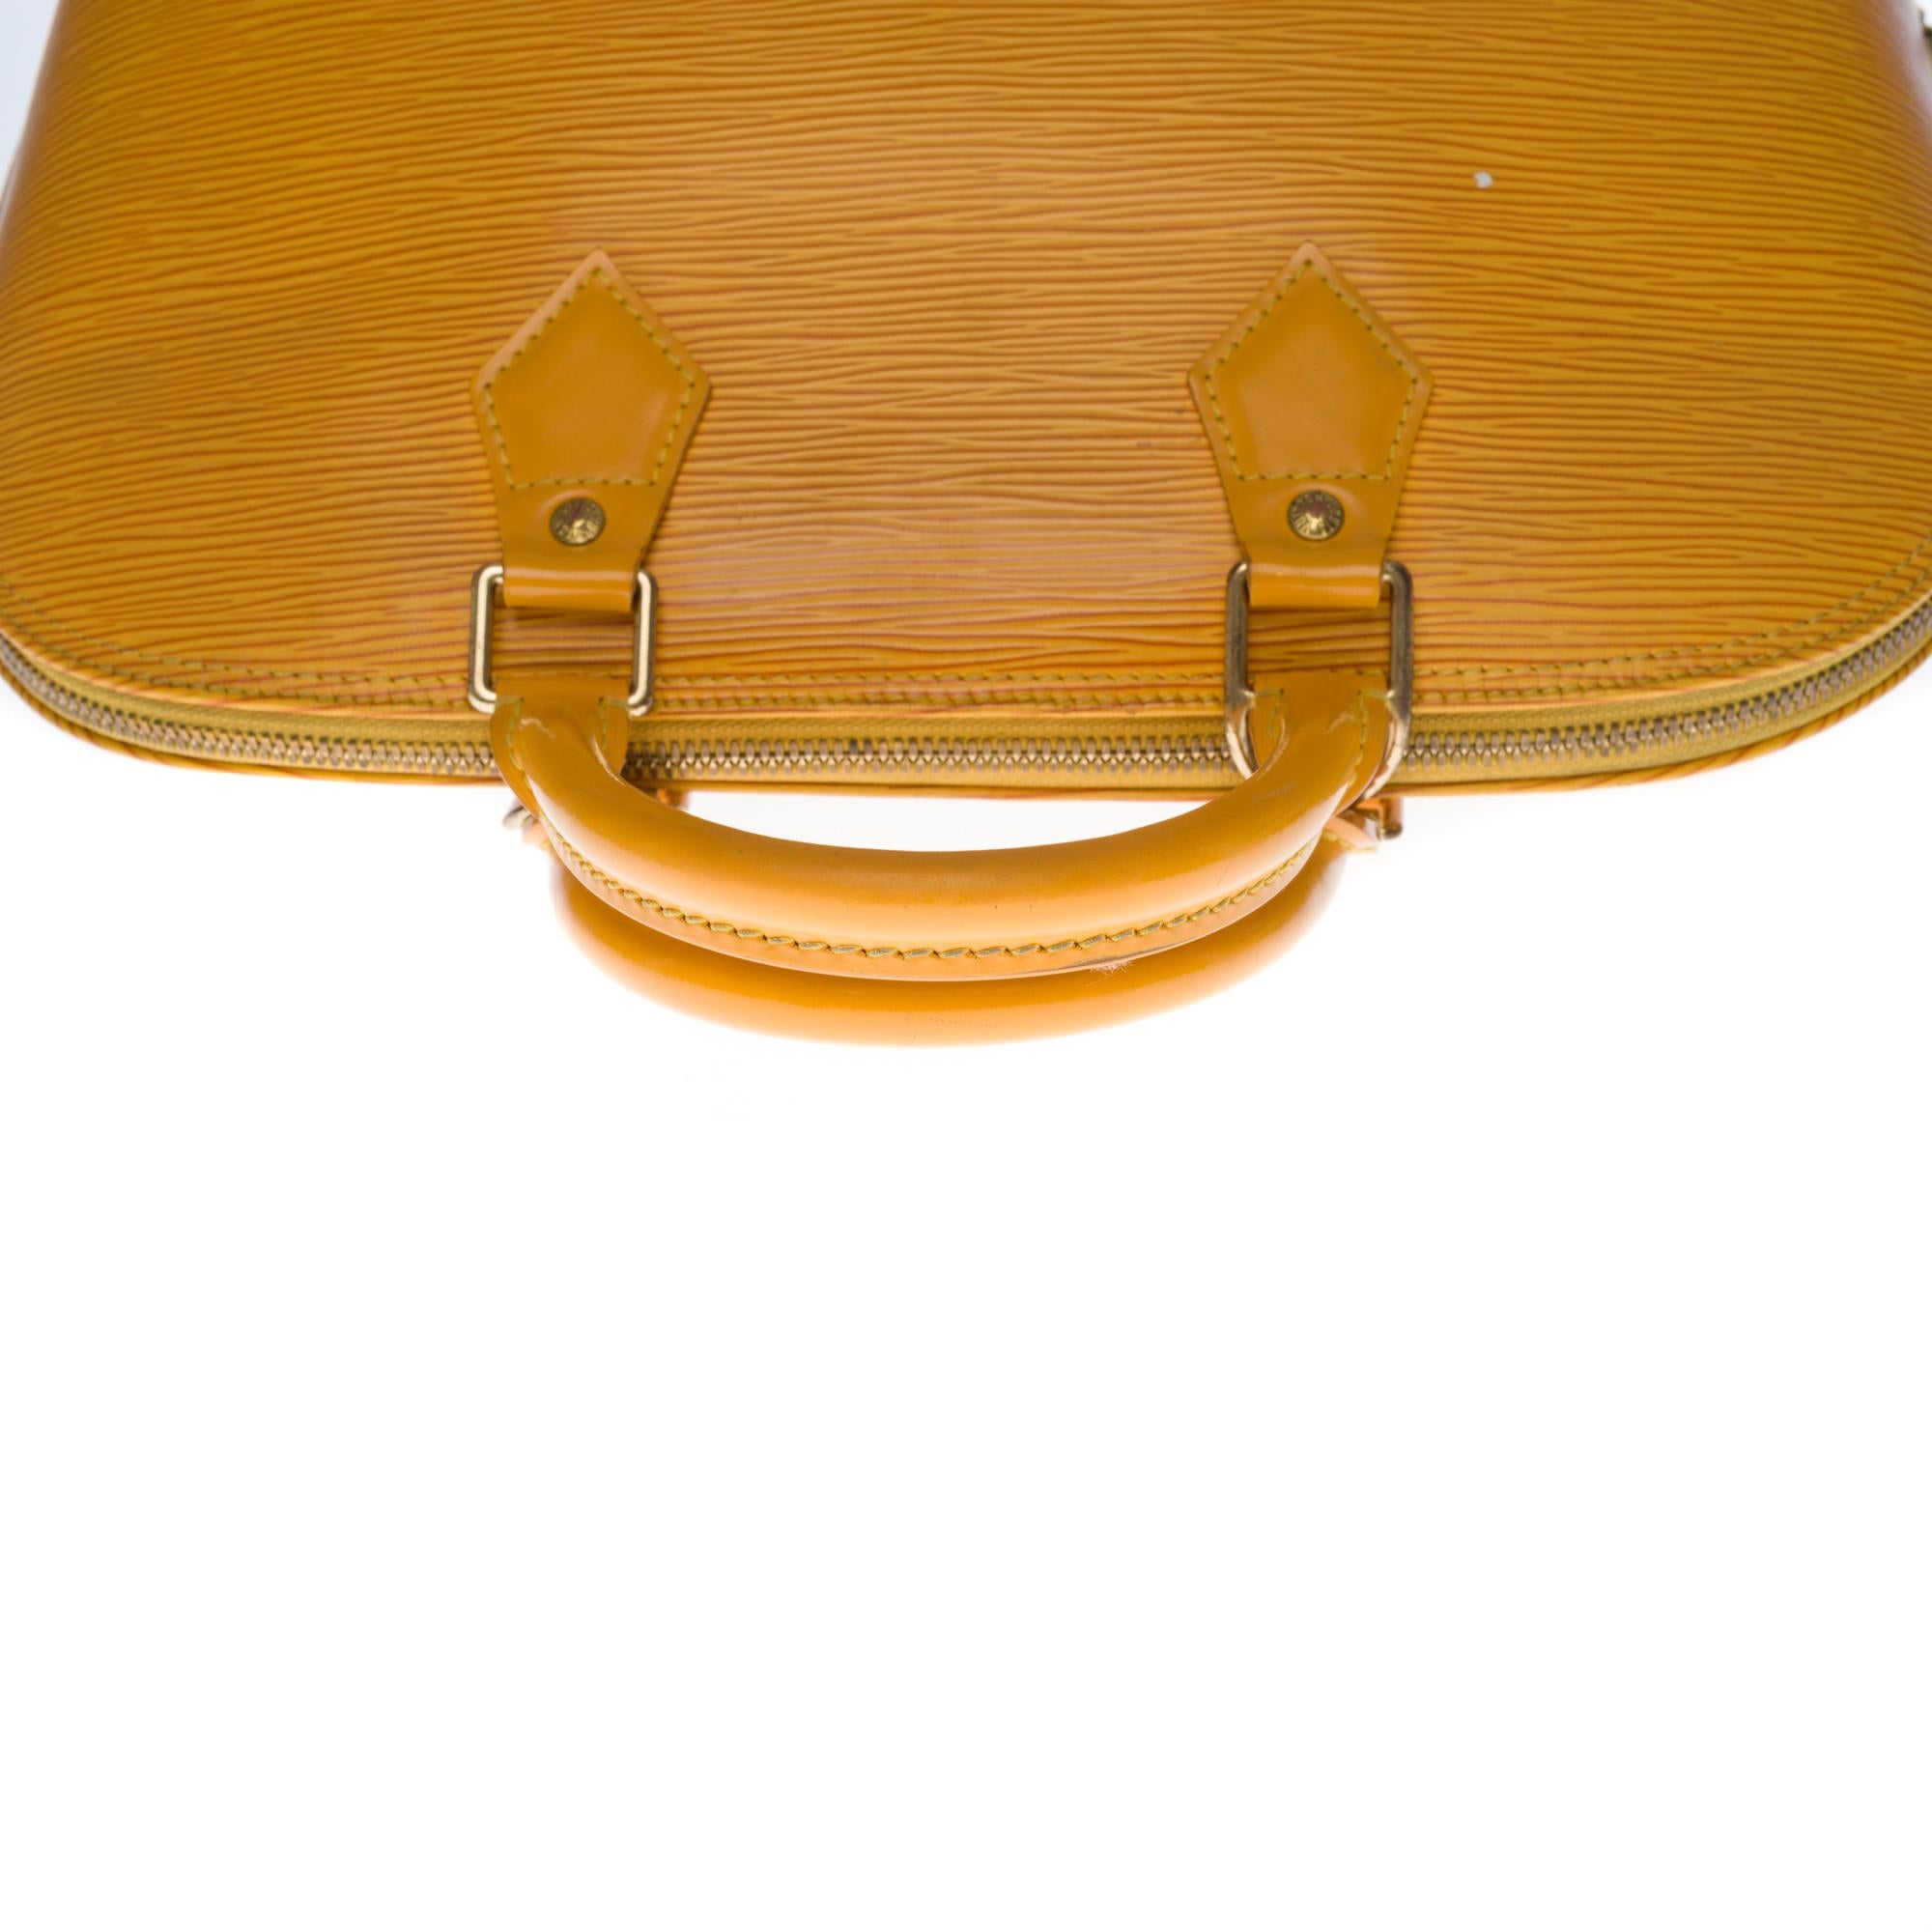 Gorgeous Louis Vuitton Alma handbag in Yellow epi leather, GHW 1